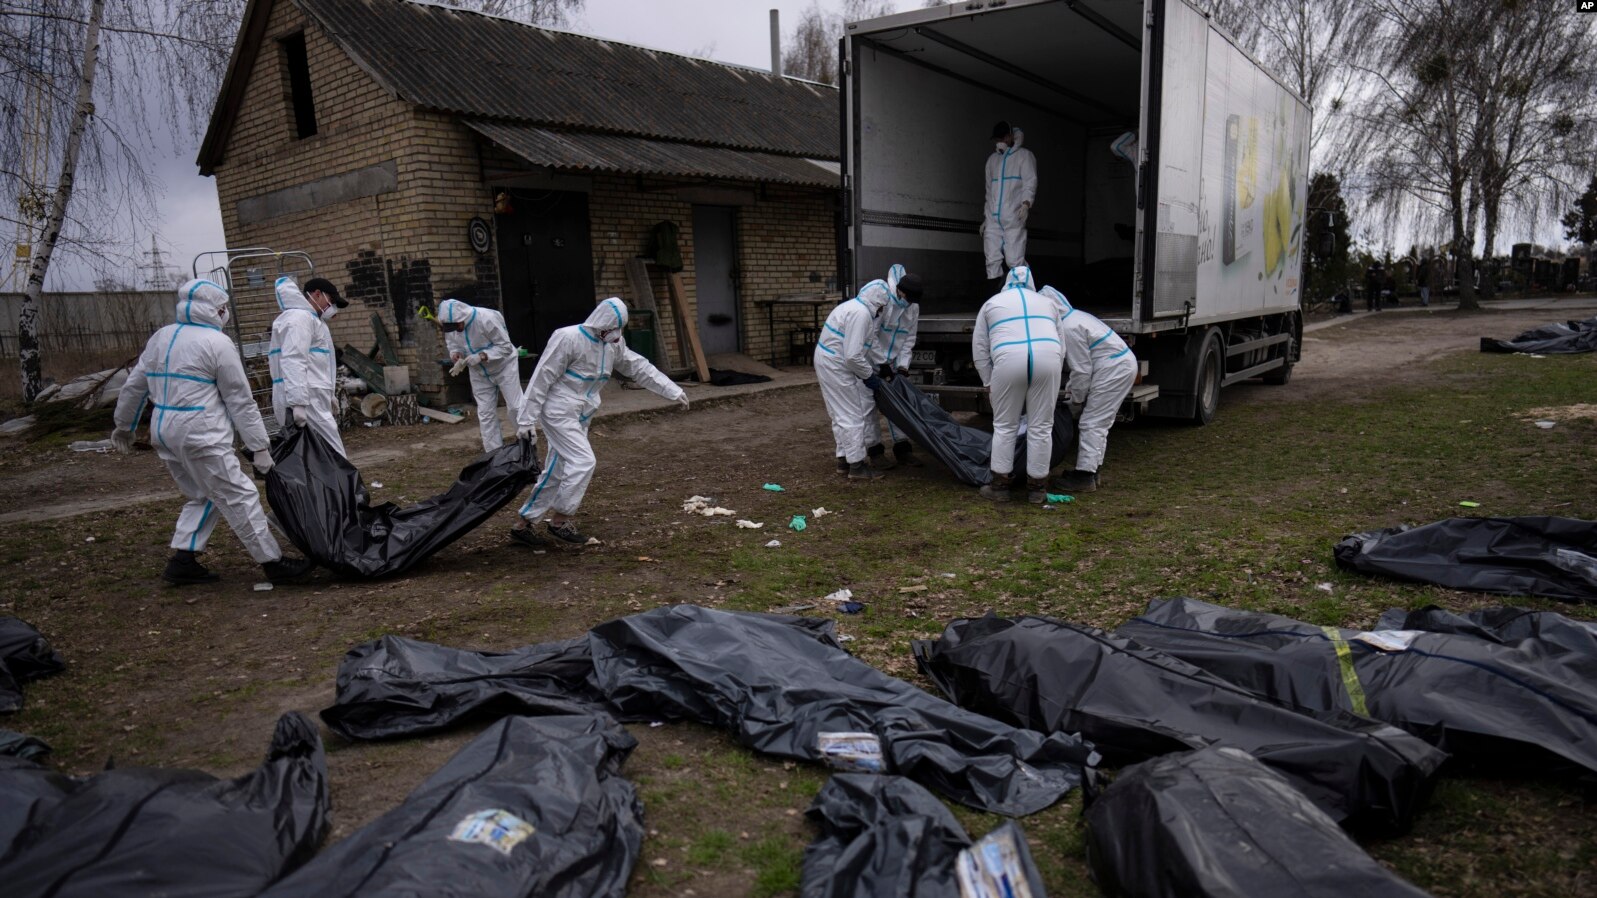 Voluntarios recogen cadáveres de civiles de civiles asesinados en Bucha, Ucrania, el 12 de abril de 2022. (Foto Prensa Libre: VOA)